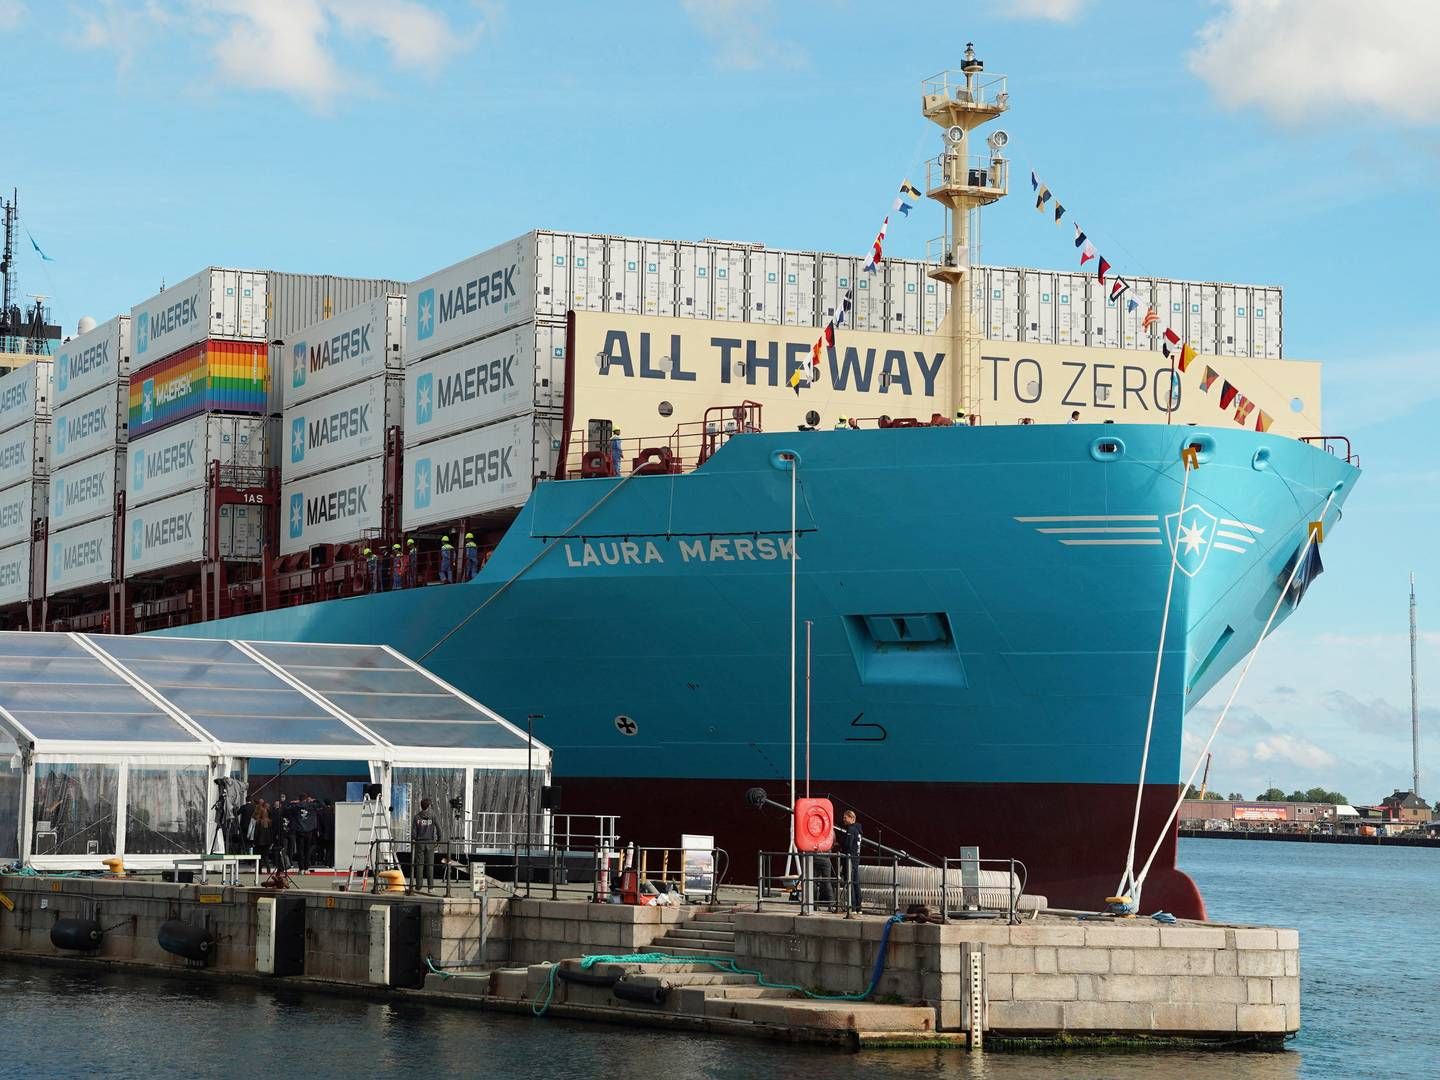 Mærsk søsatte i 2023 Laura Mærsk, der blev det først containerskib i verden til at kunne drevet af metanol. Containerskibet er bare det første af foreløbig 26 bestilte Mærsk-skibe, der kan sejle på metanol. | Foto: Tom Little/Reuters/Ritzau Scanpix